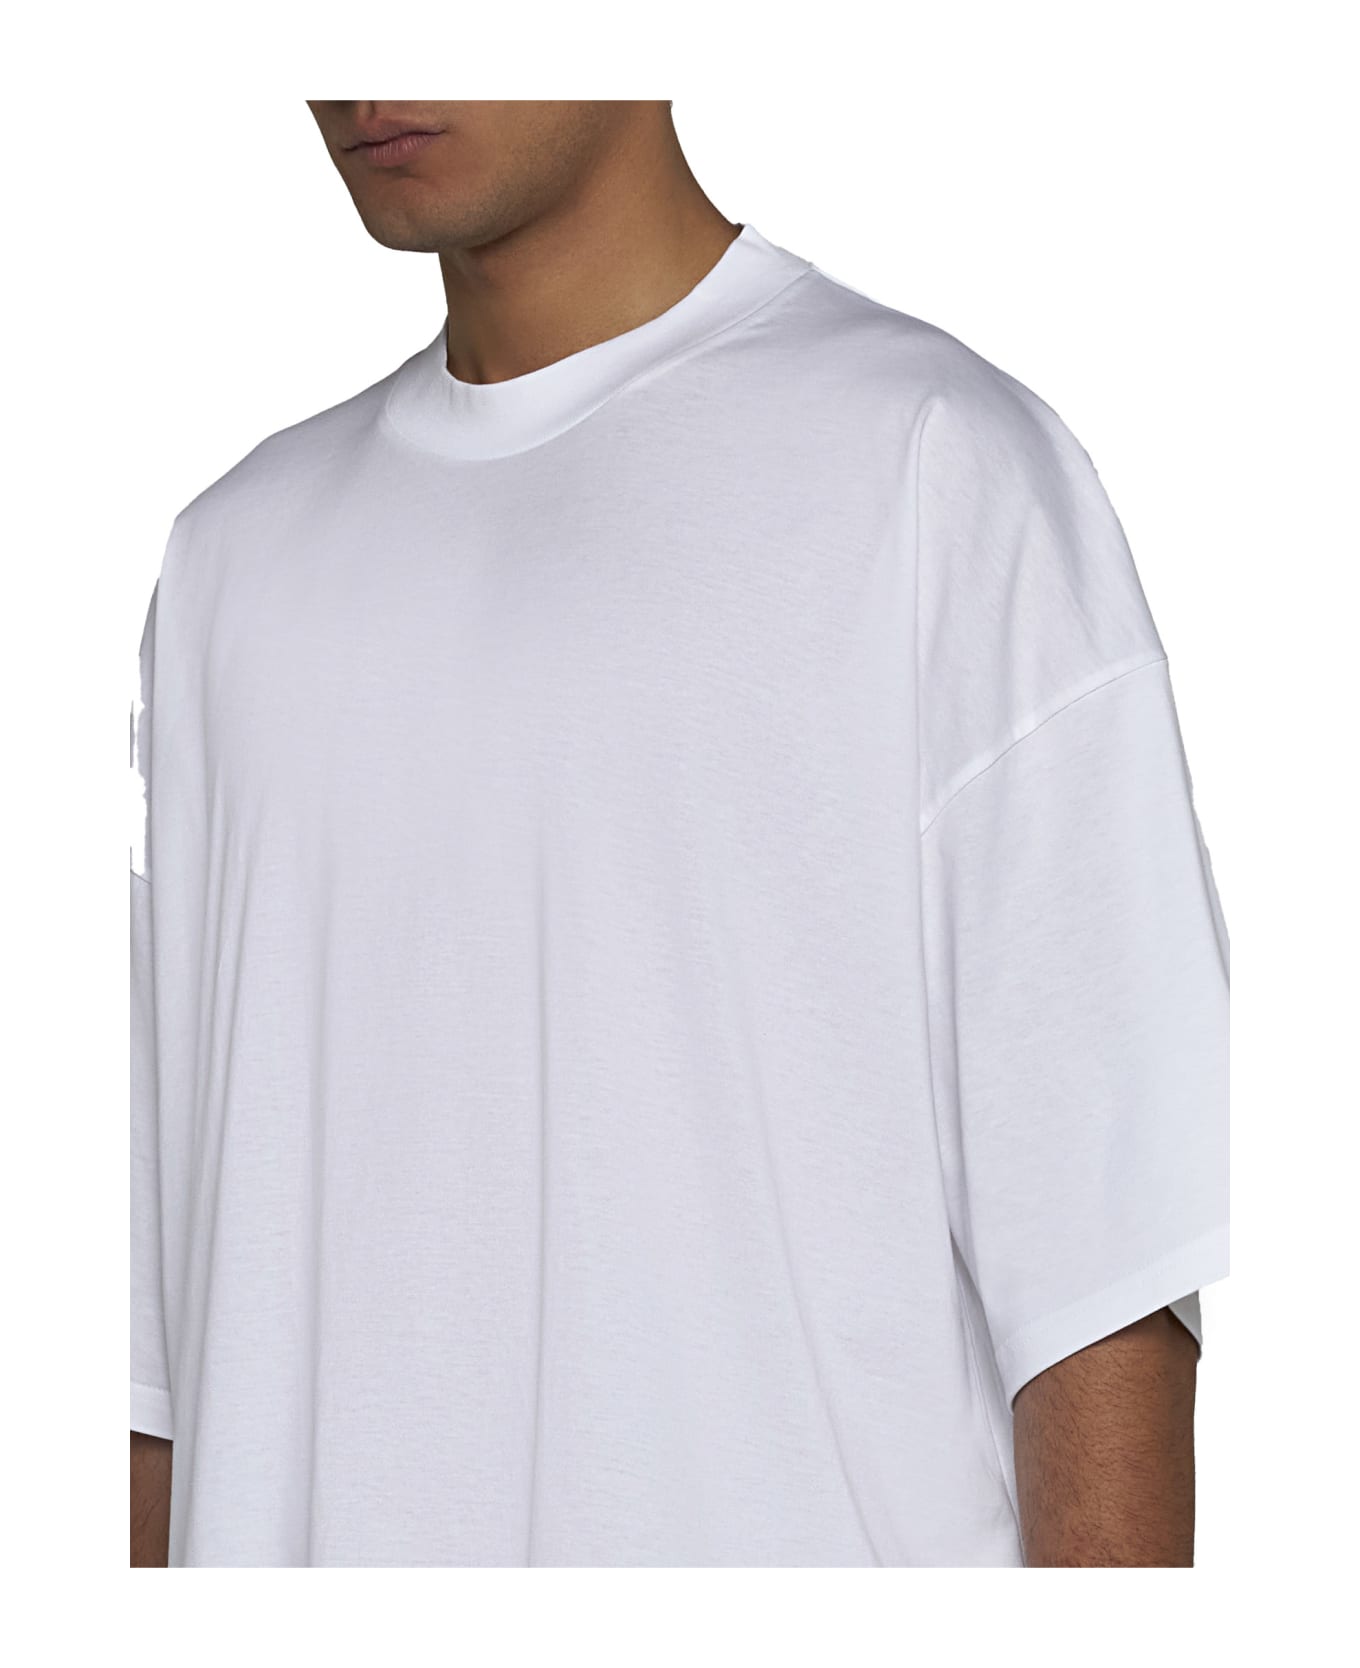 Studio Nicholson T-Shirt - Optic white